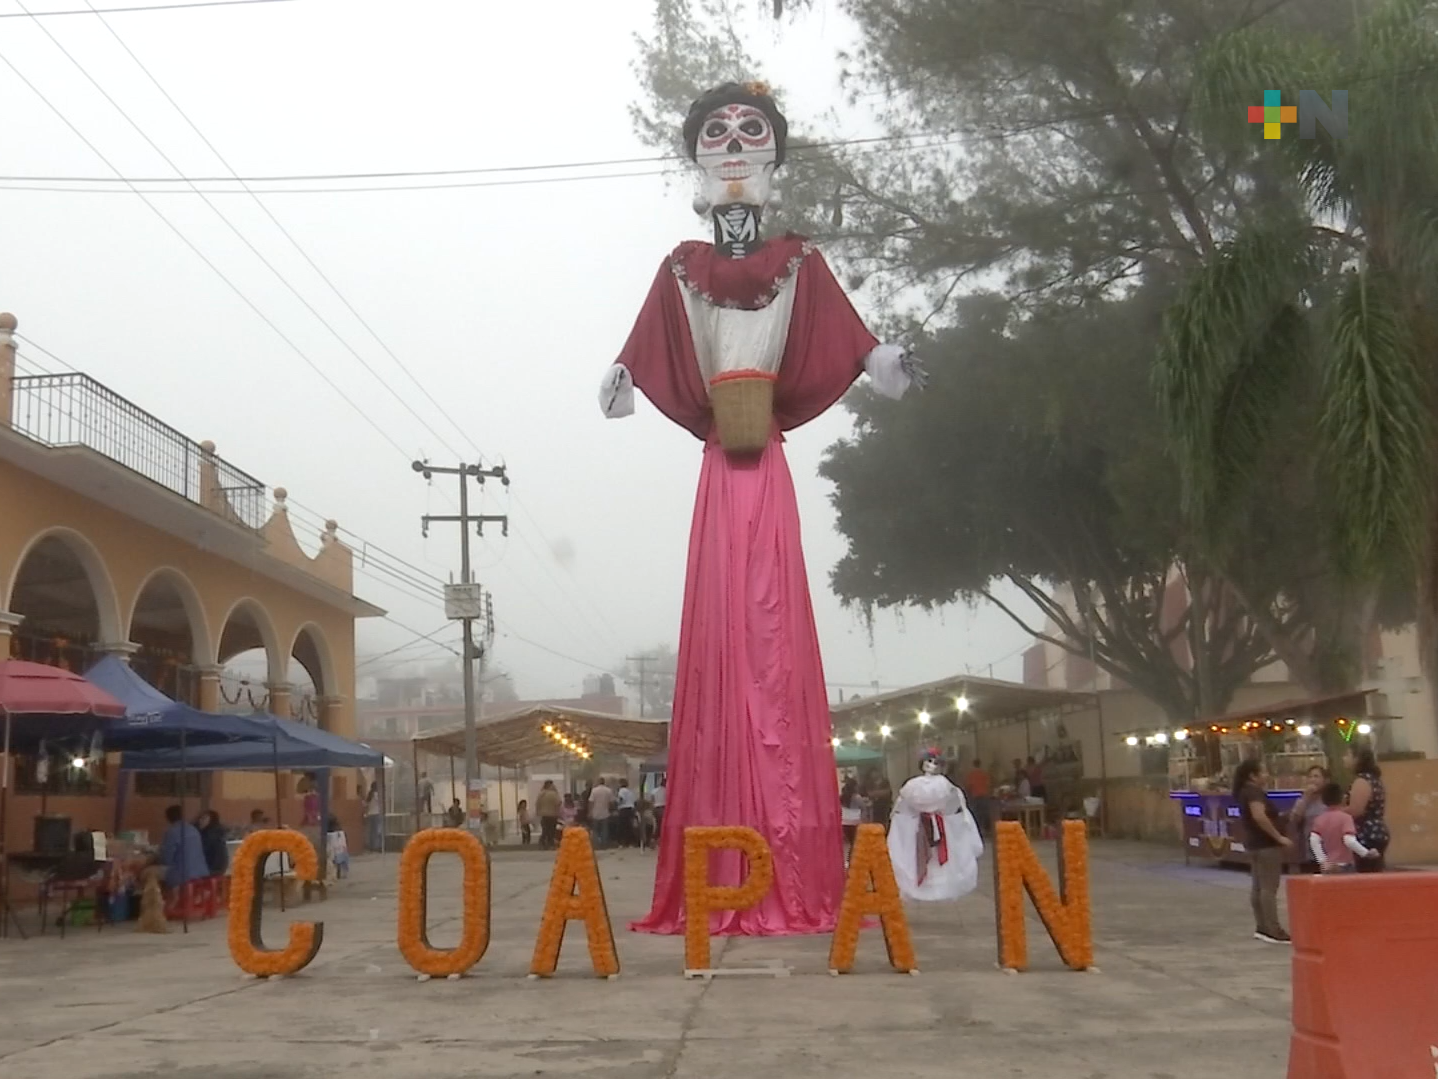 Festival del Cempasúchil en San Pablo Coapan hasta el 29 de octubre